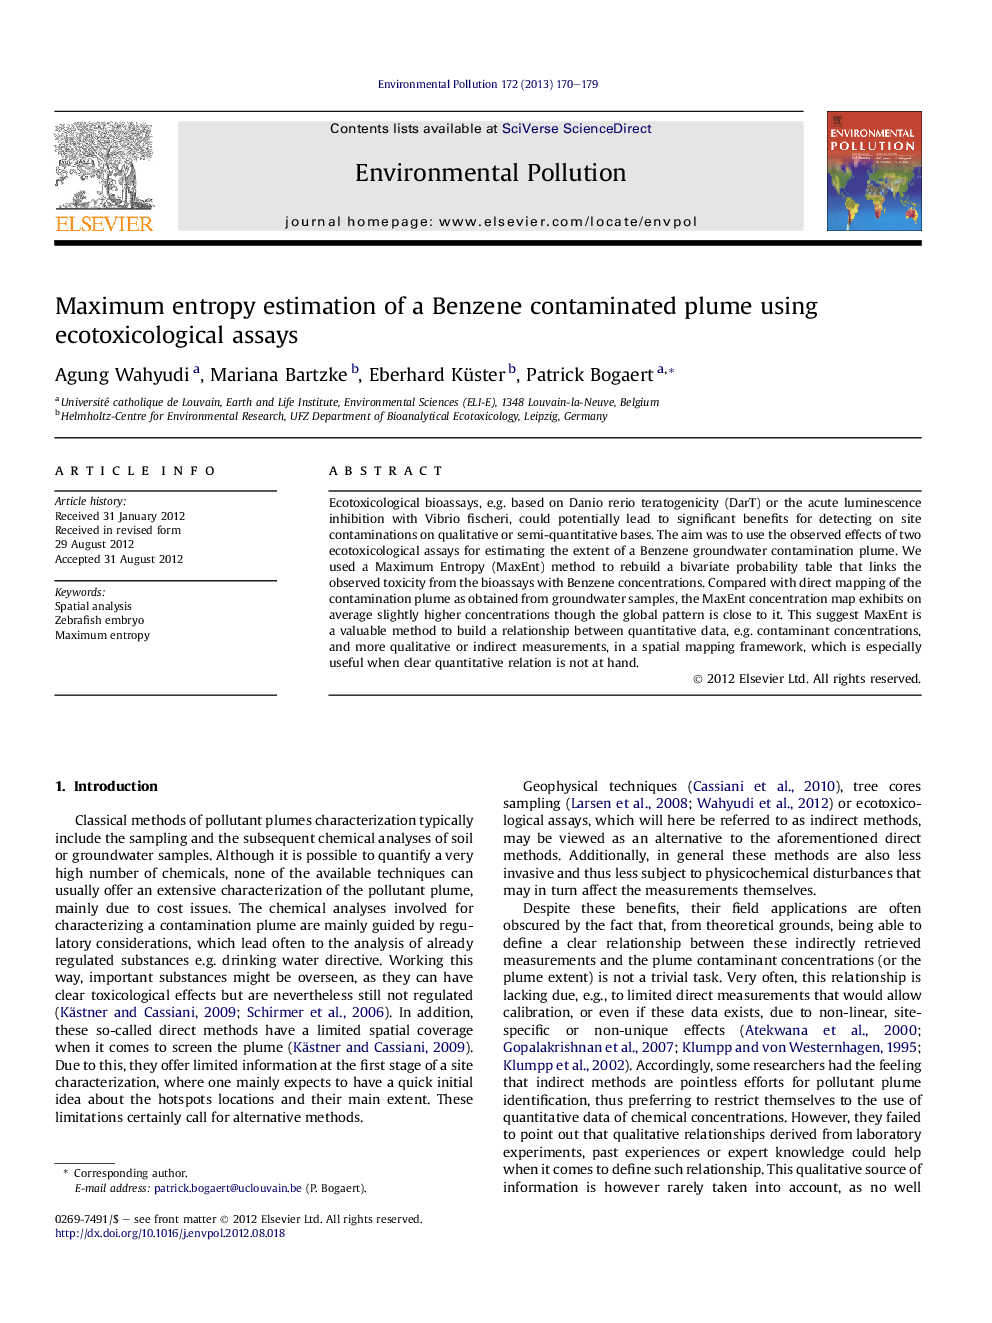 Maximum entropy estimation of a Benzene contaminated plume using ecotoxicological assays